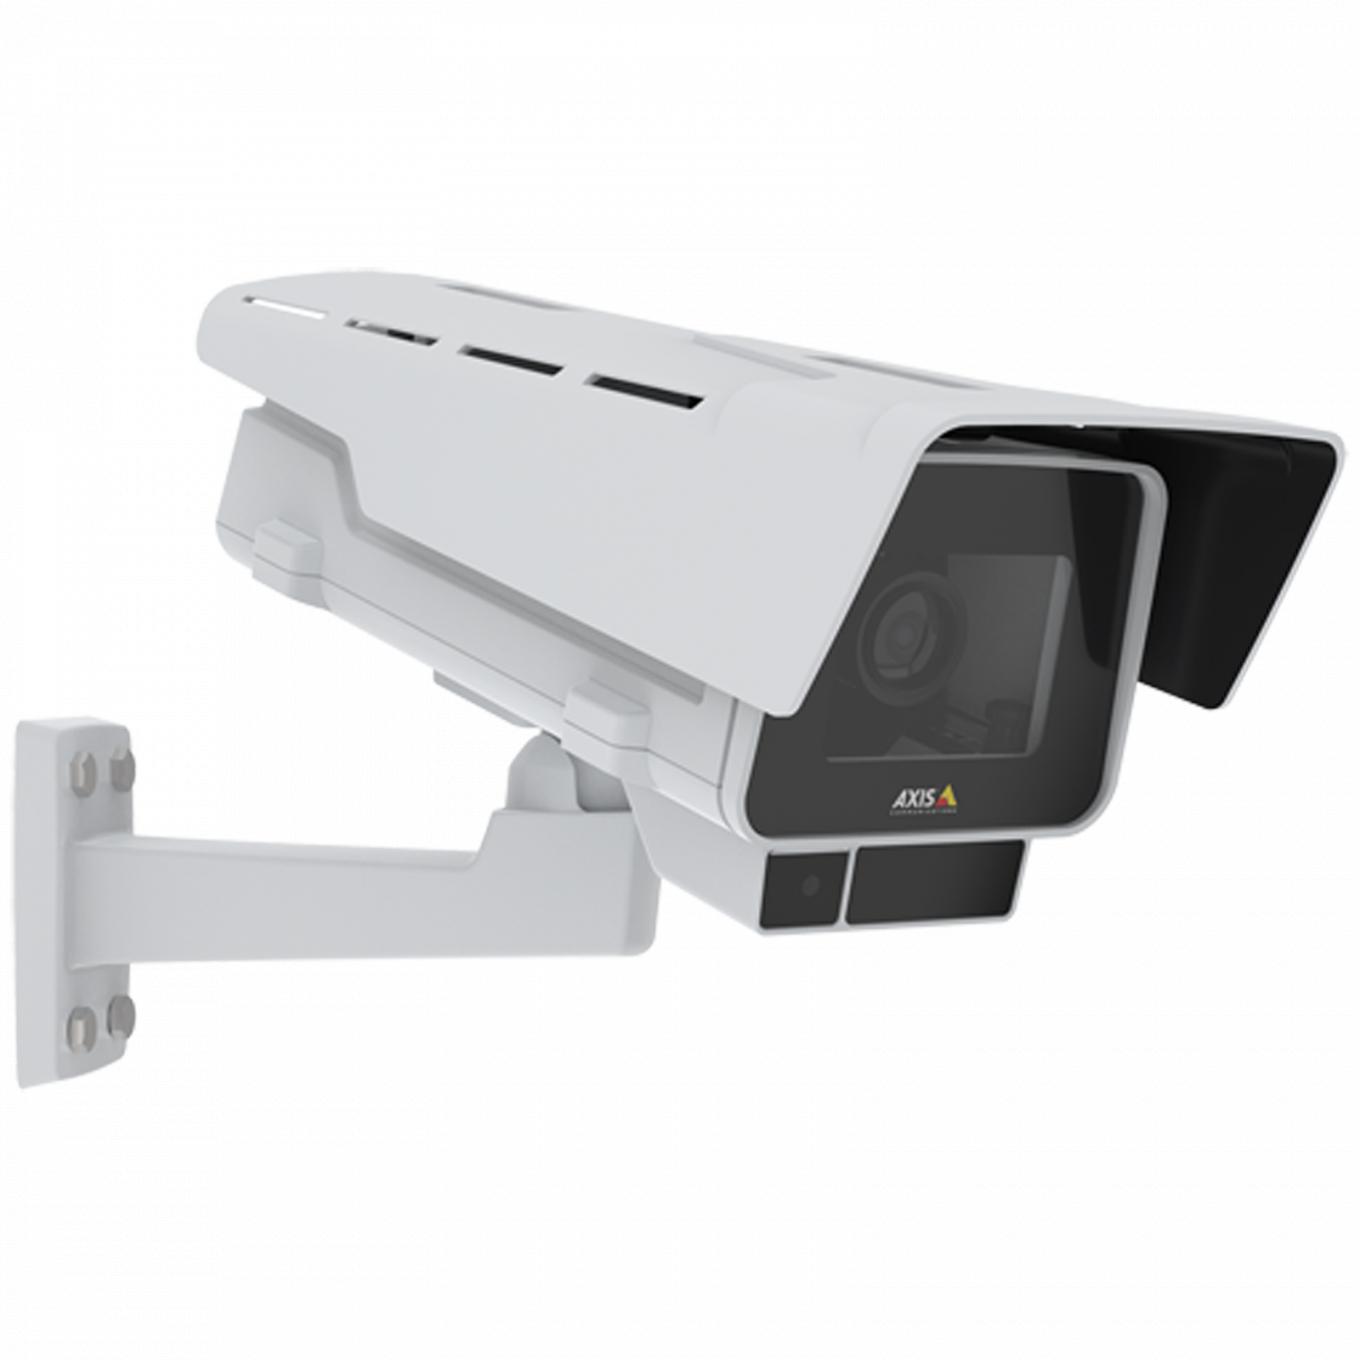 La AXIS P1378-LE IP Camera tiene estabilización electrónica de imagen y OptimizedIR. El producto se muestra desde el ángulo derecho.